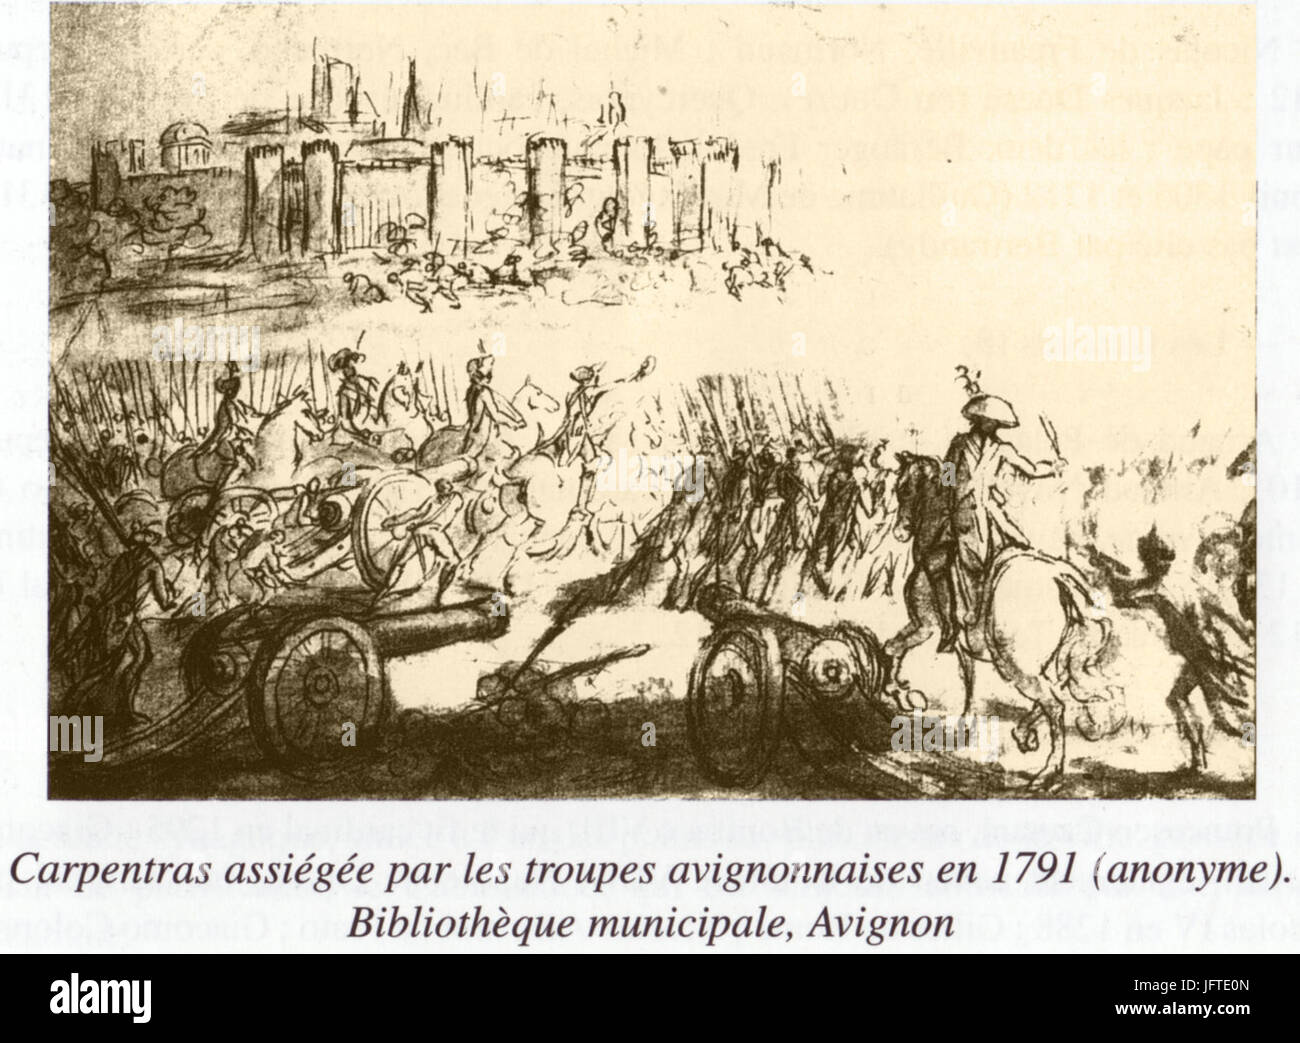 18 Siège de Carpentras (1791) Anonyme Bibliothèque municipale Ceccano Avignon Stock Photo